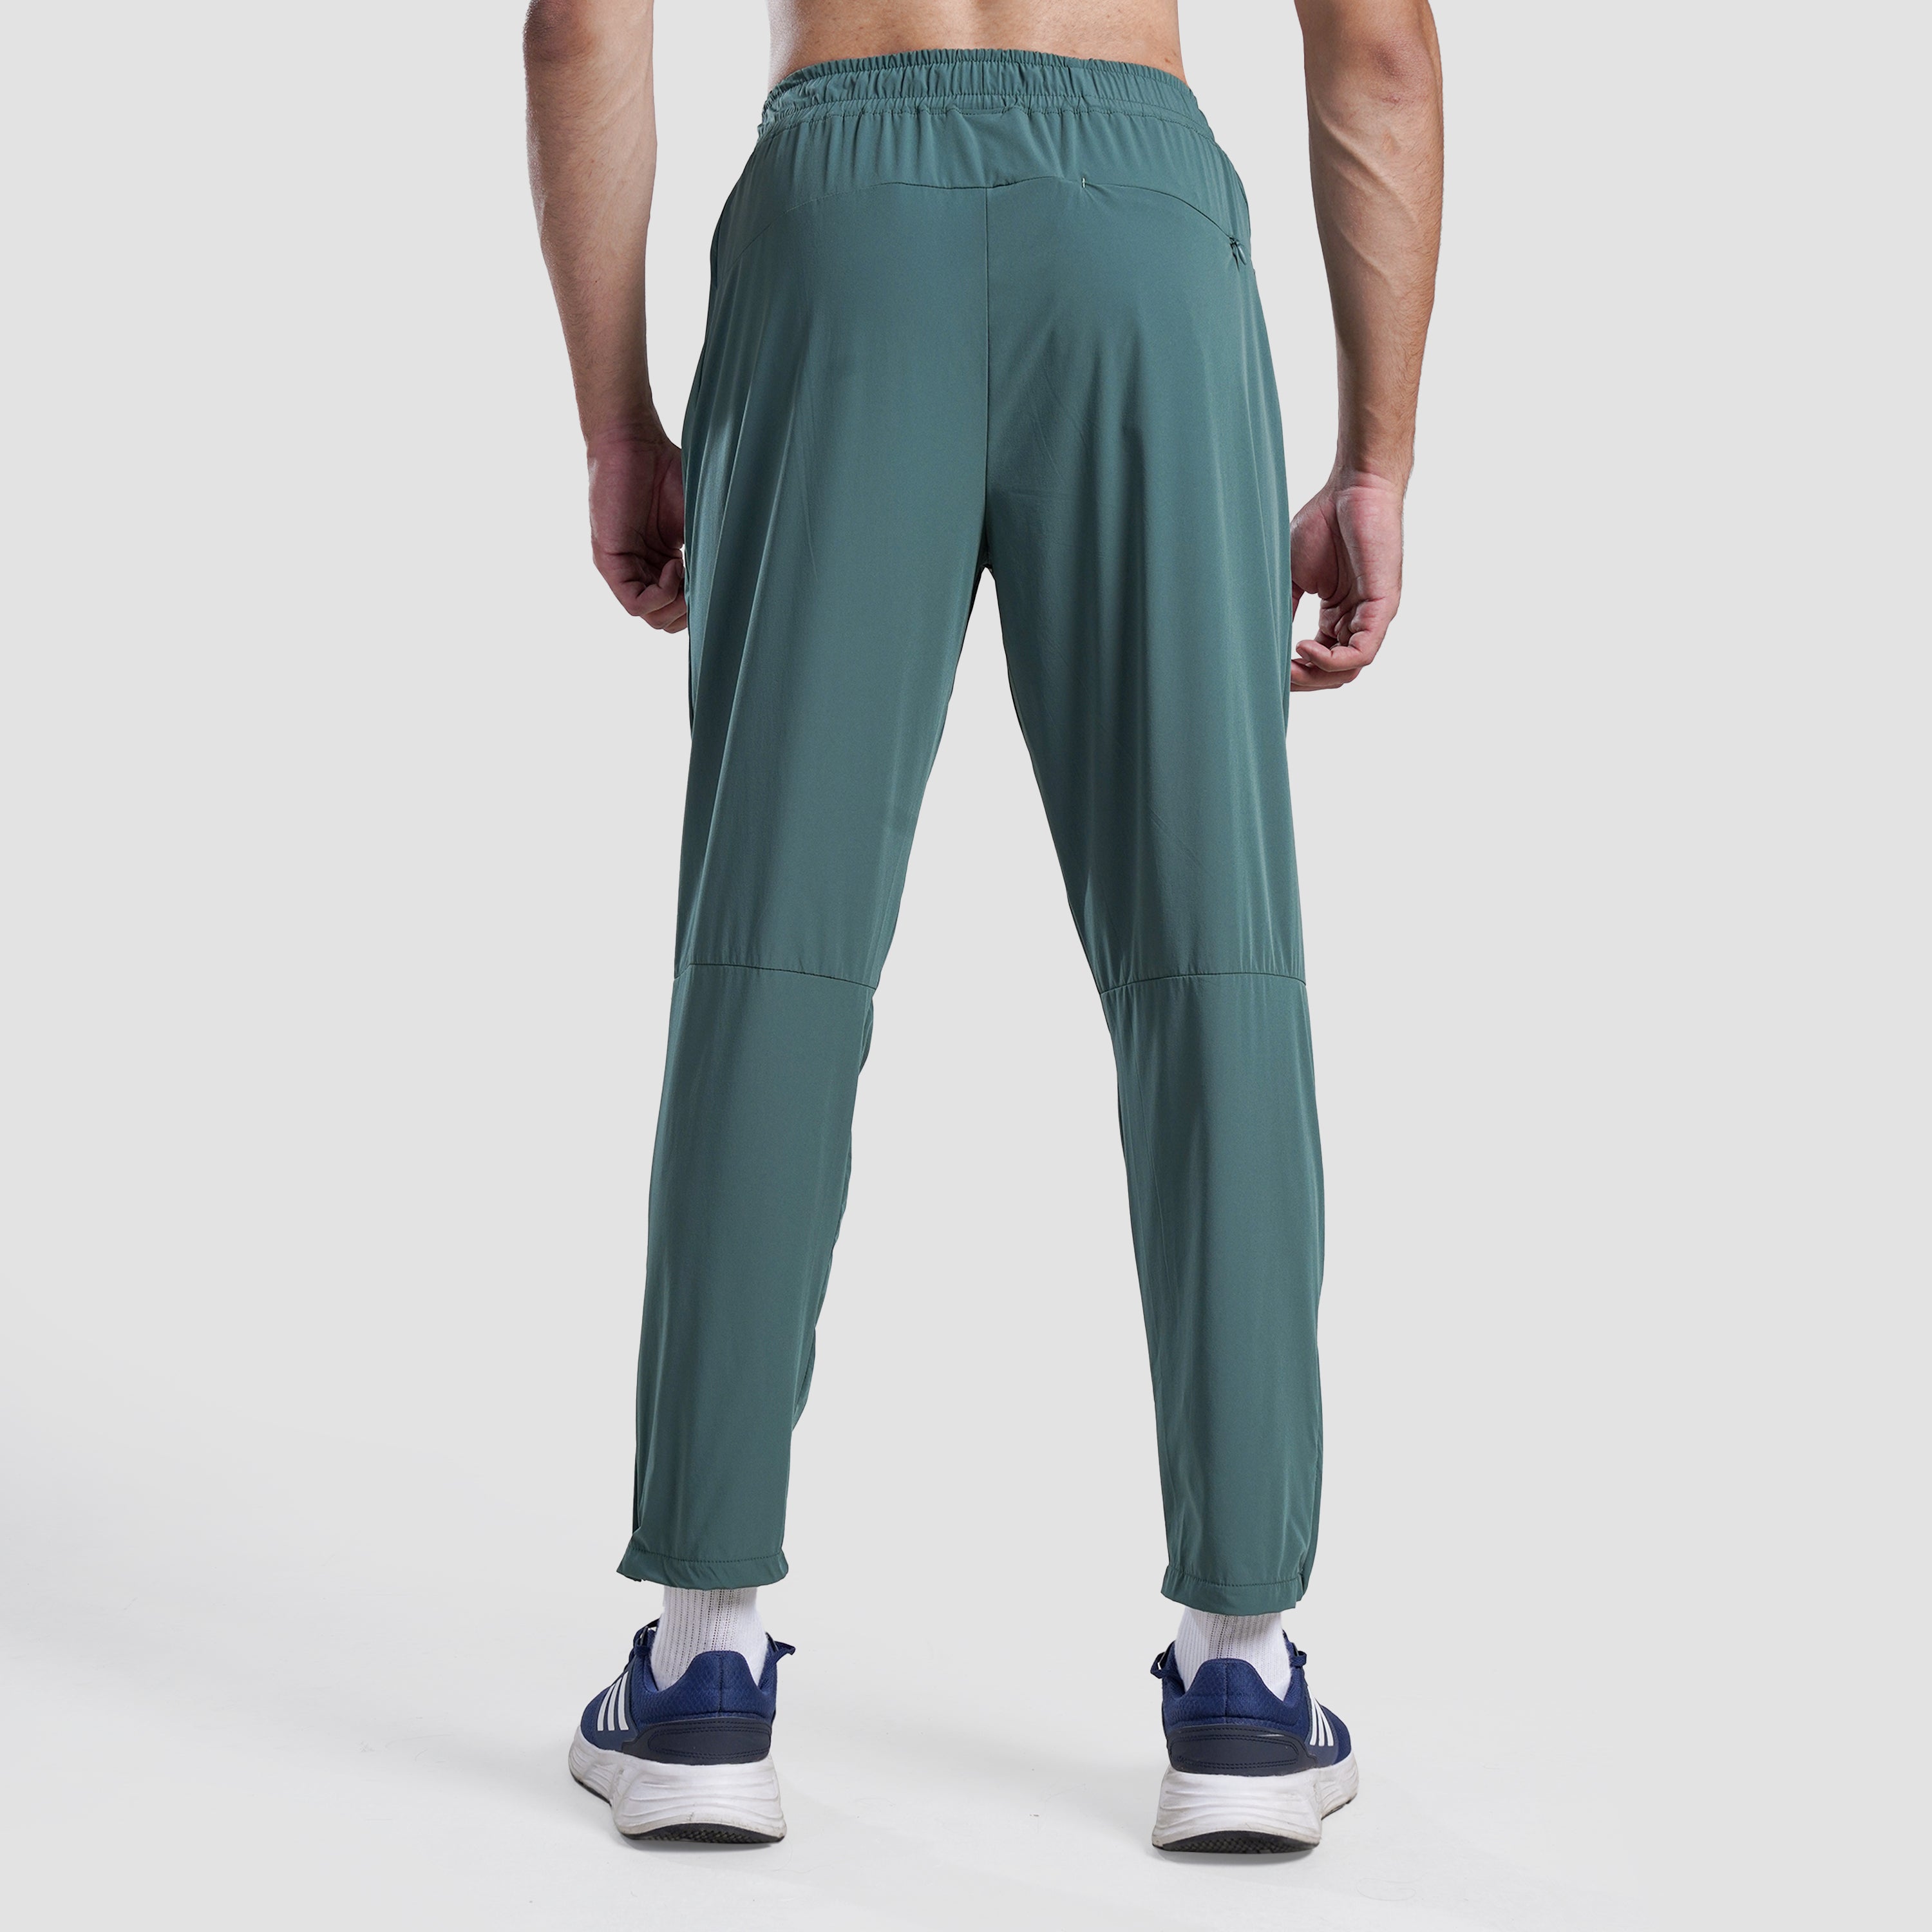 Aero Run Trousers (Green)